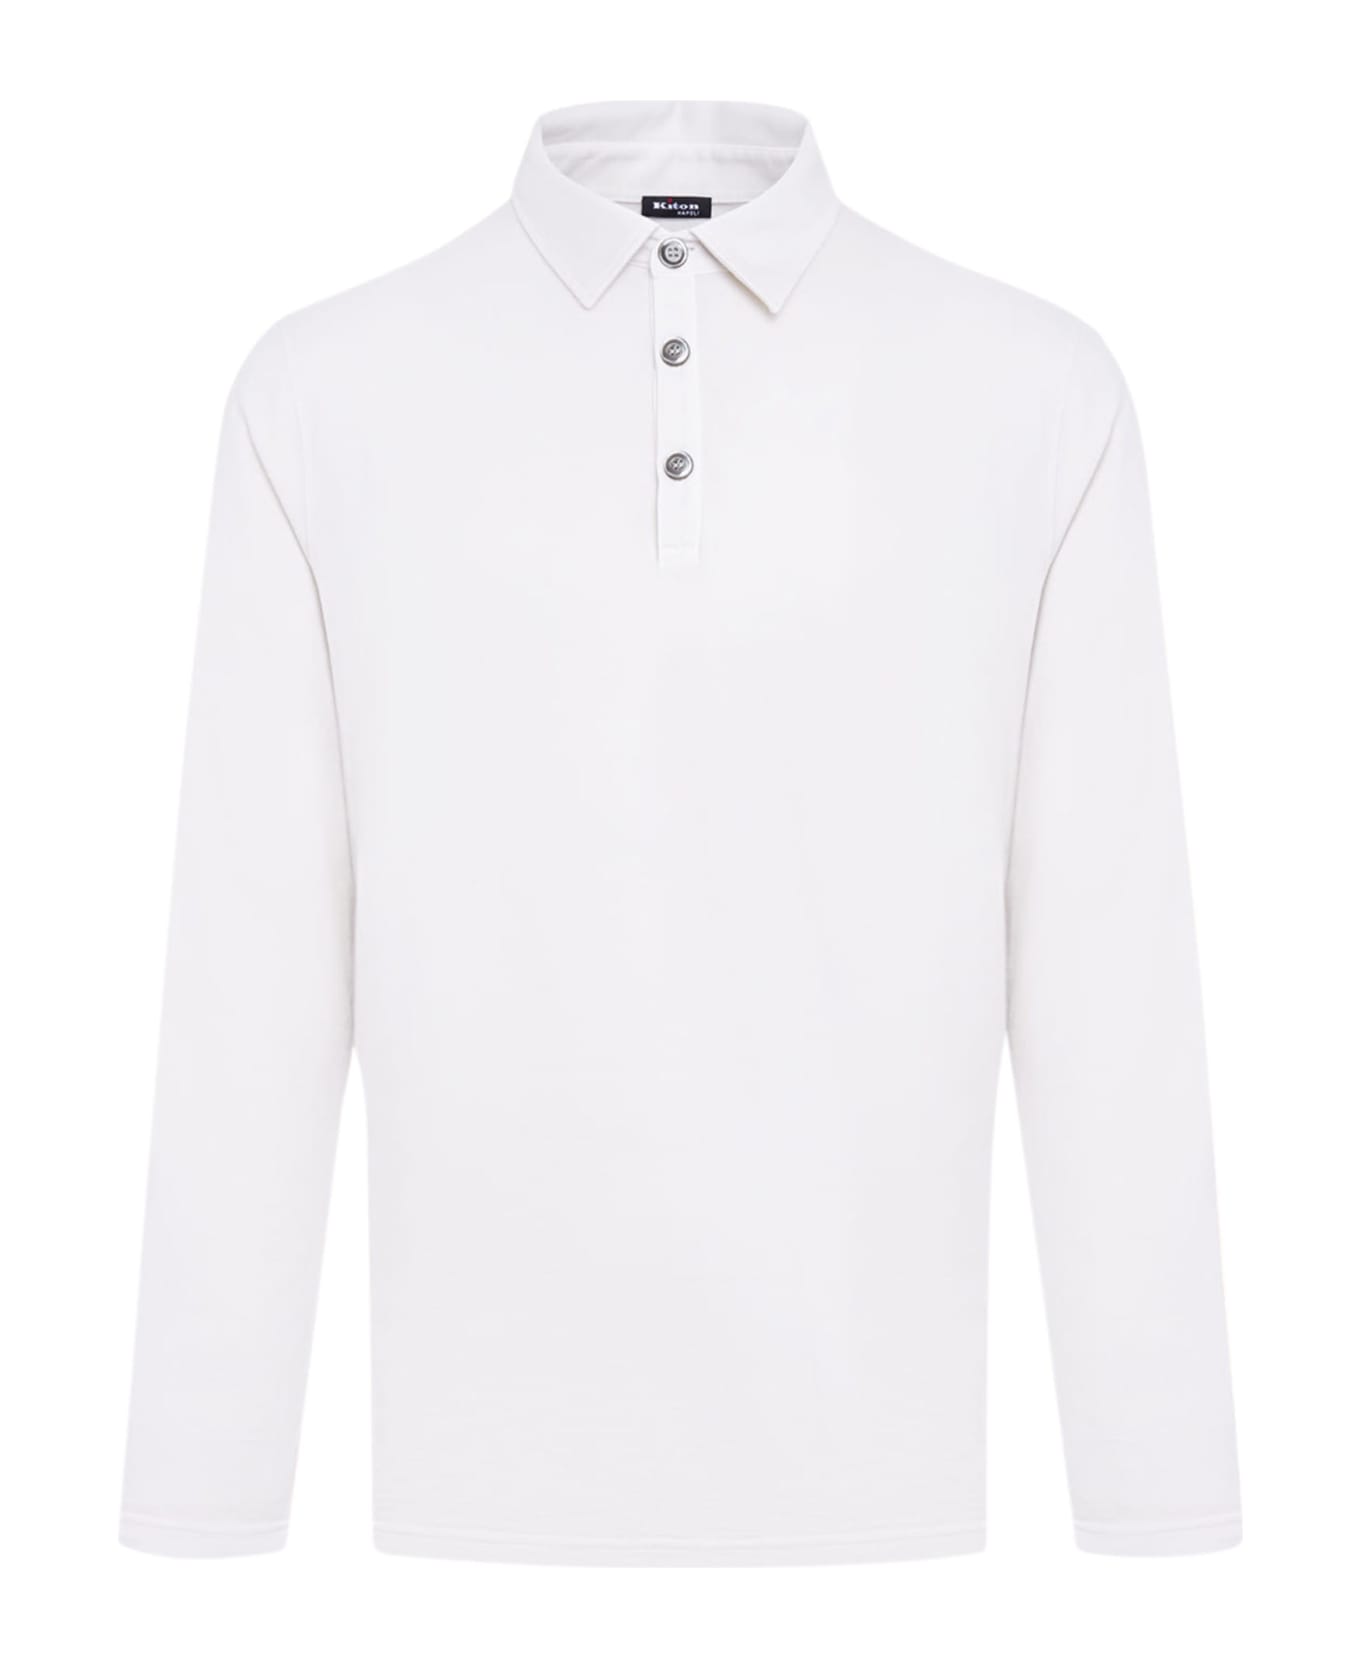 Kiton Jersey Poloshirt Cotton - WHITE